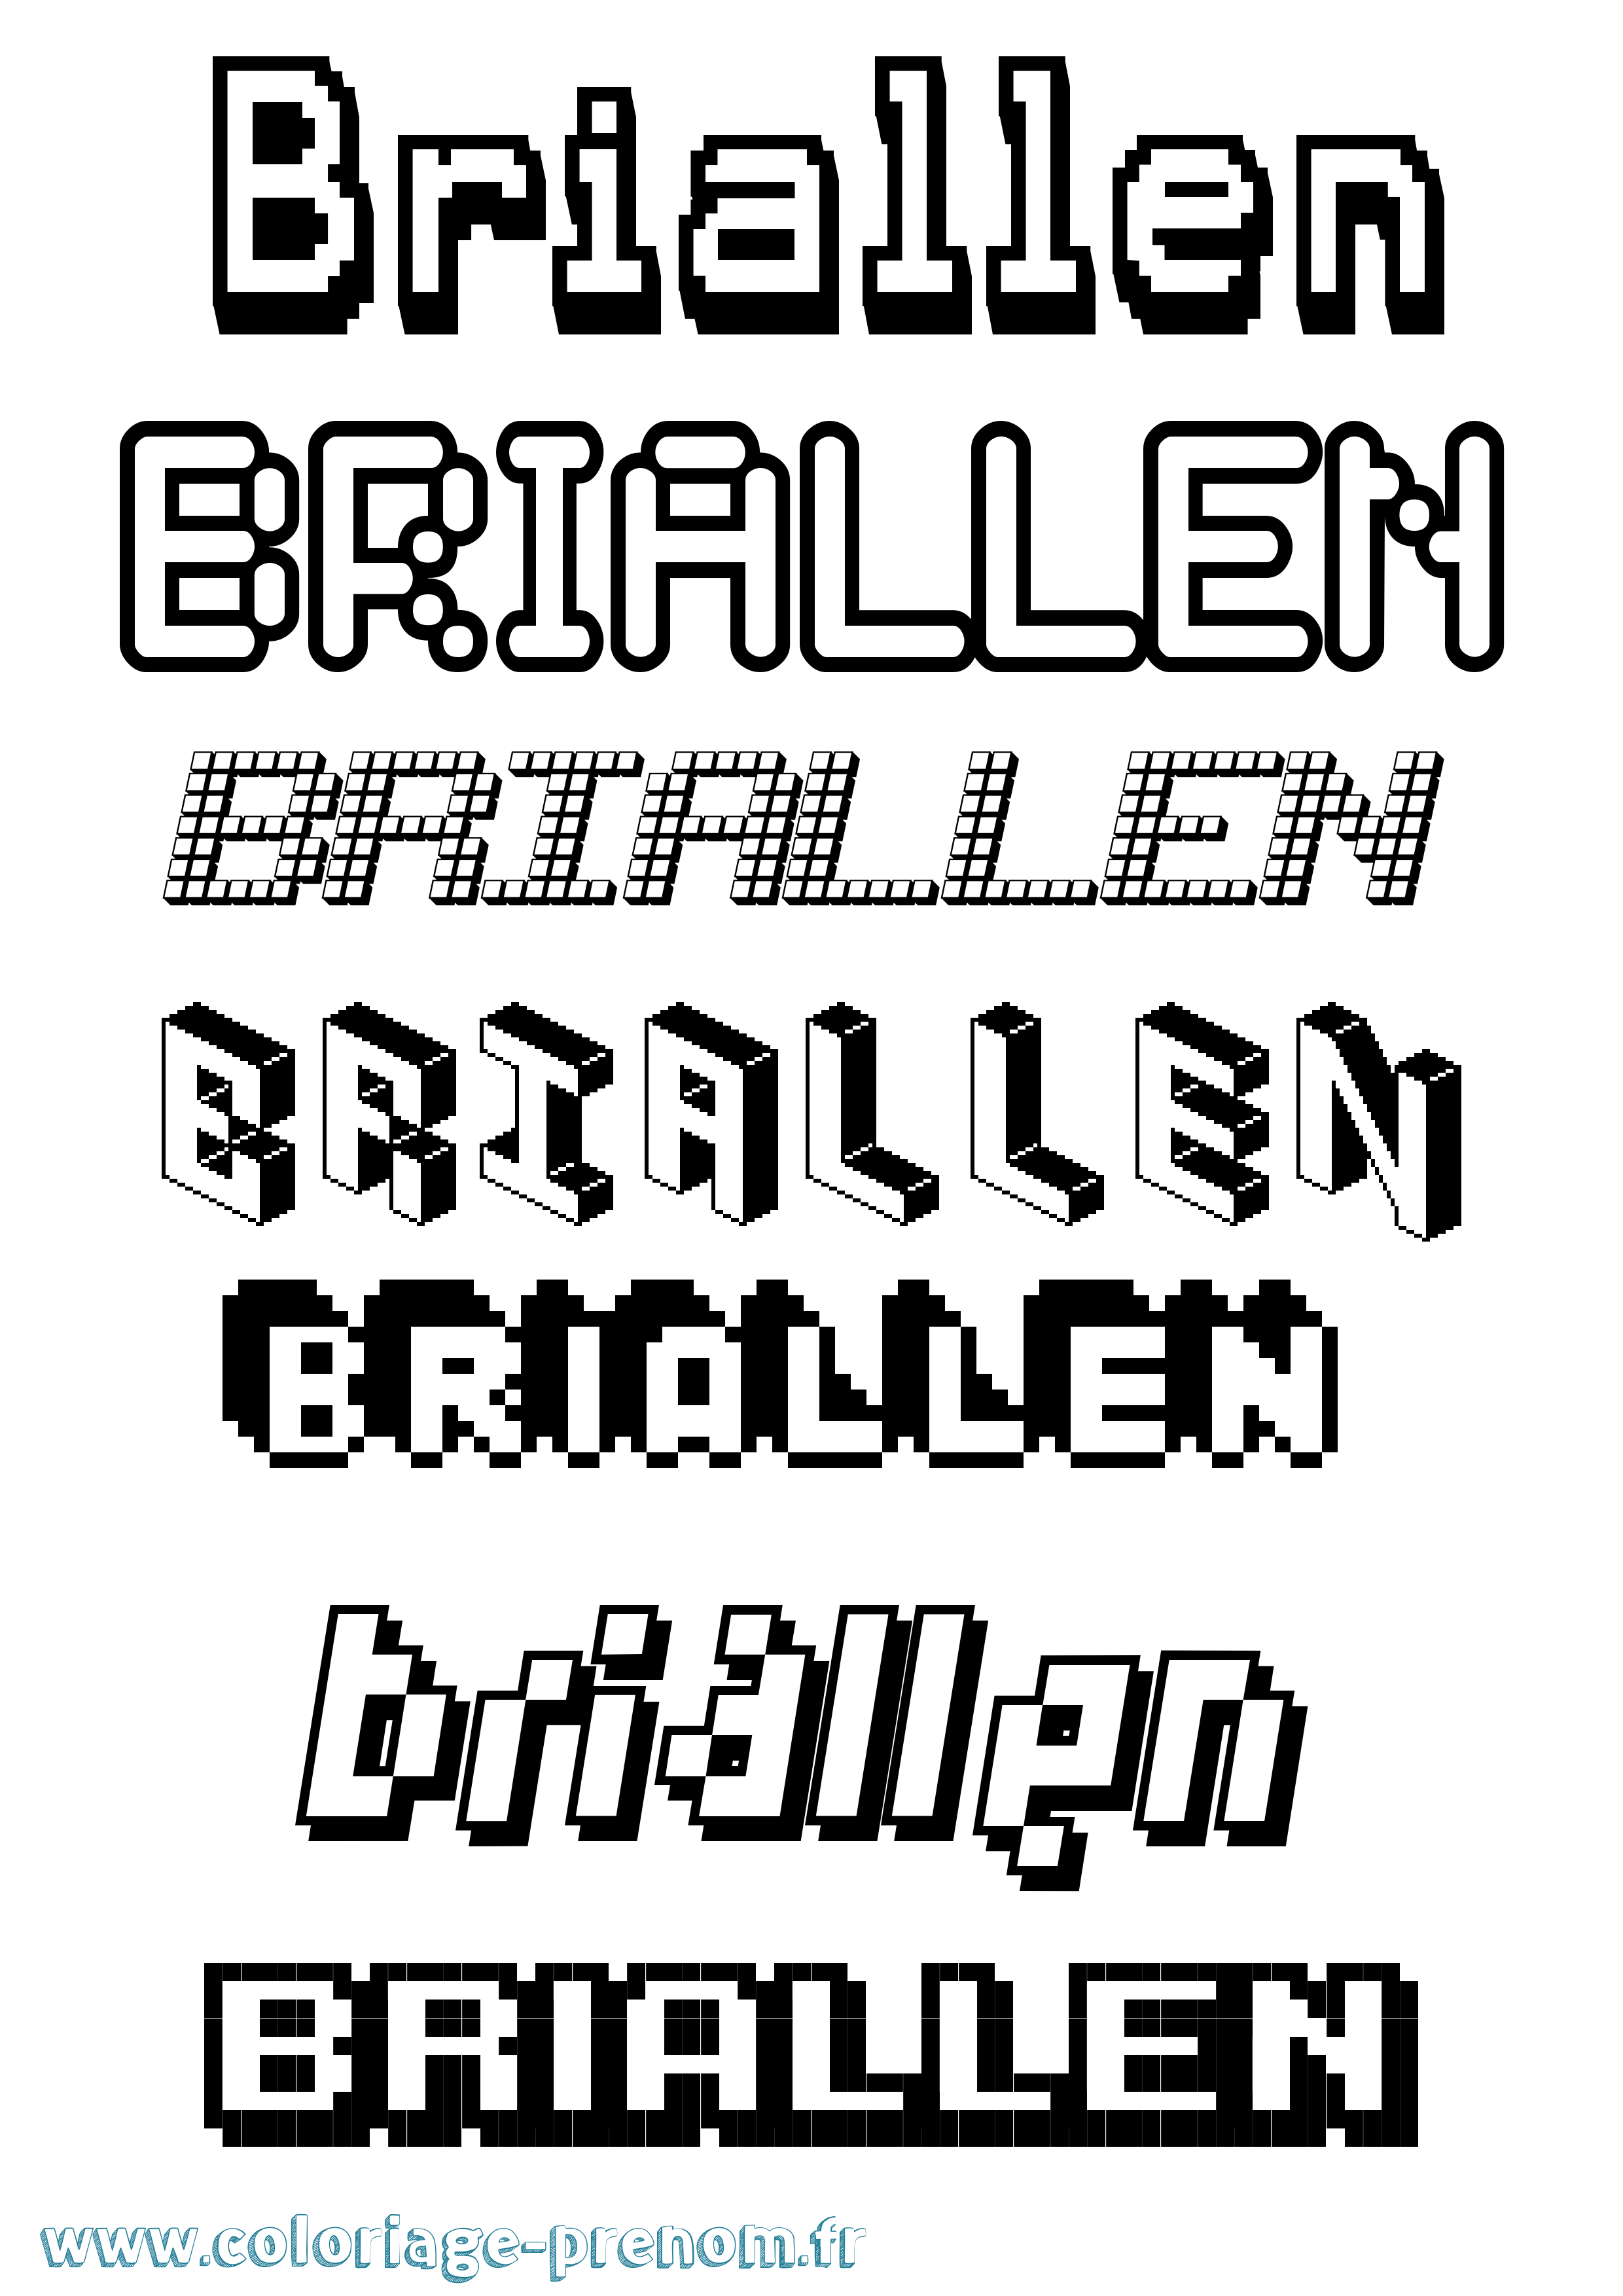 Coloriage prénom Briallen Pixel